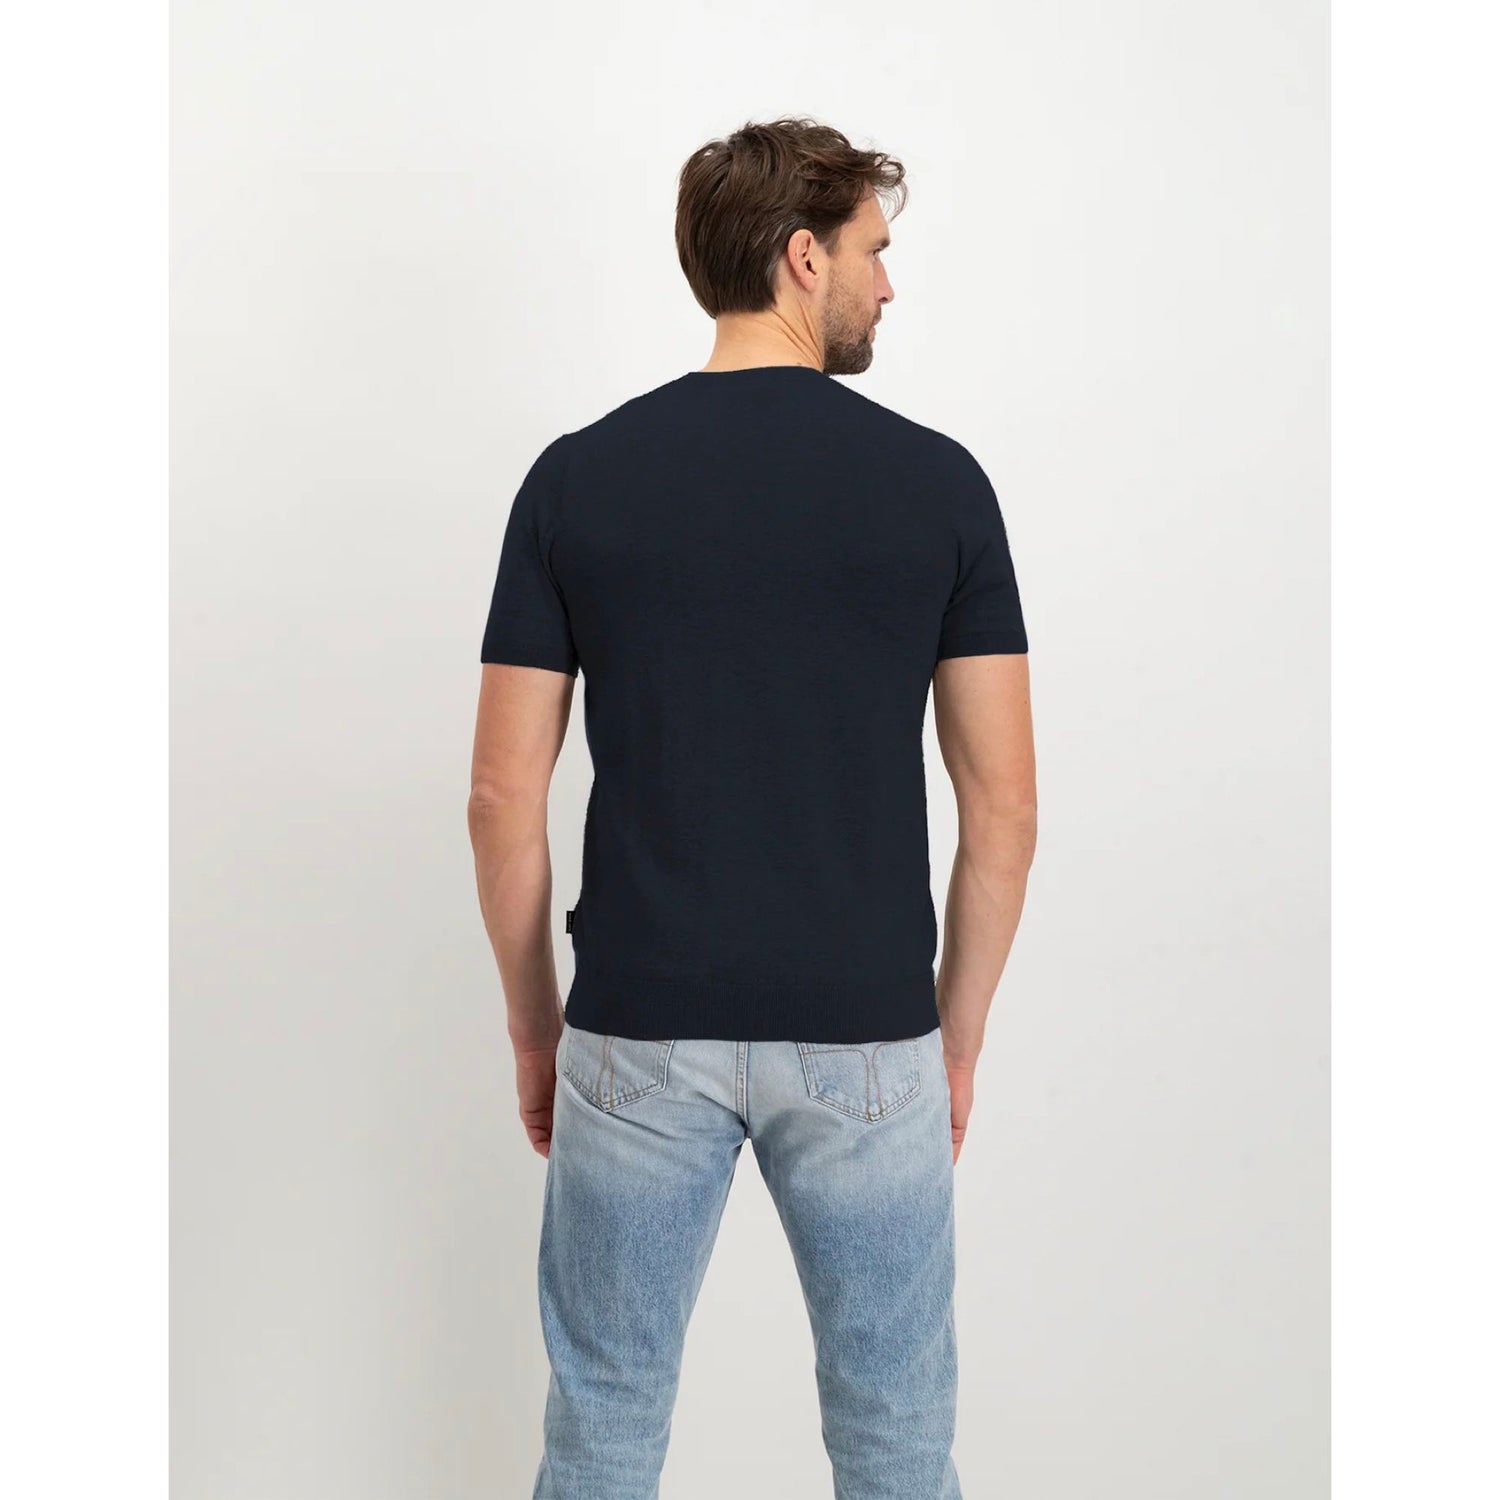 T-shirt Boudewijn gebreid - navy blauw